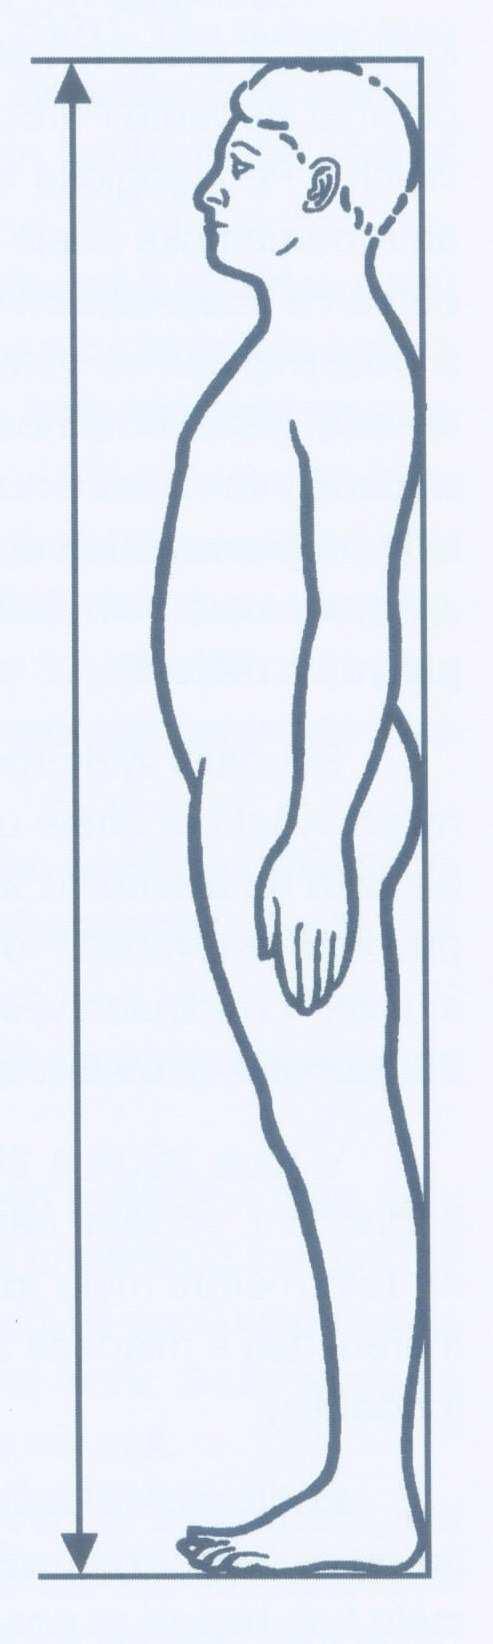 4. 3 Somatometrické parametry Při vyšetřování probandů jsem zjišťovala následující tělesné charakteristiky: tělesná výška, tělesná hmotnost, délka a šířka nohy.